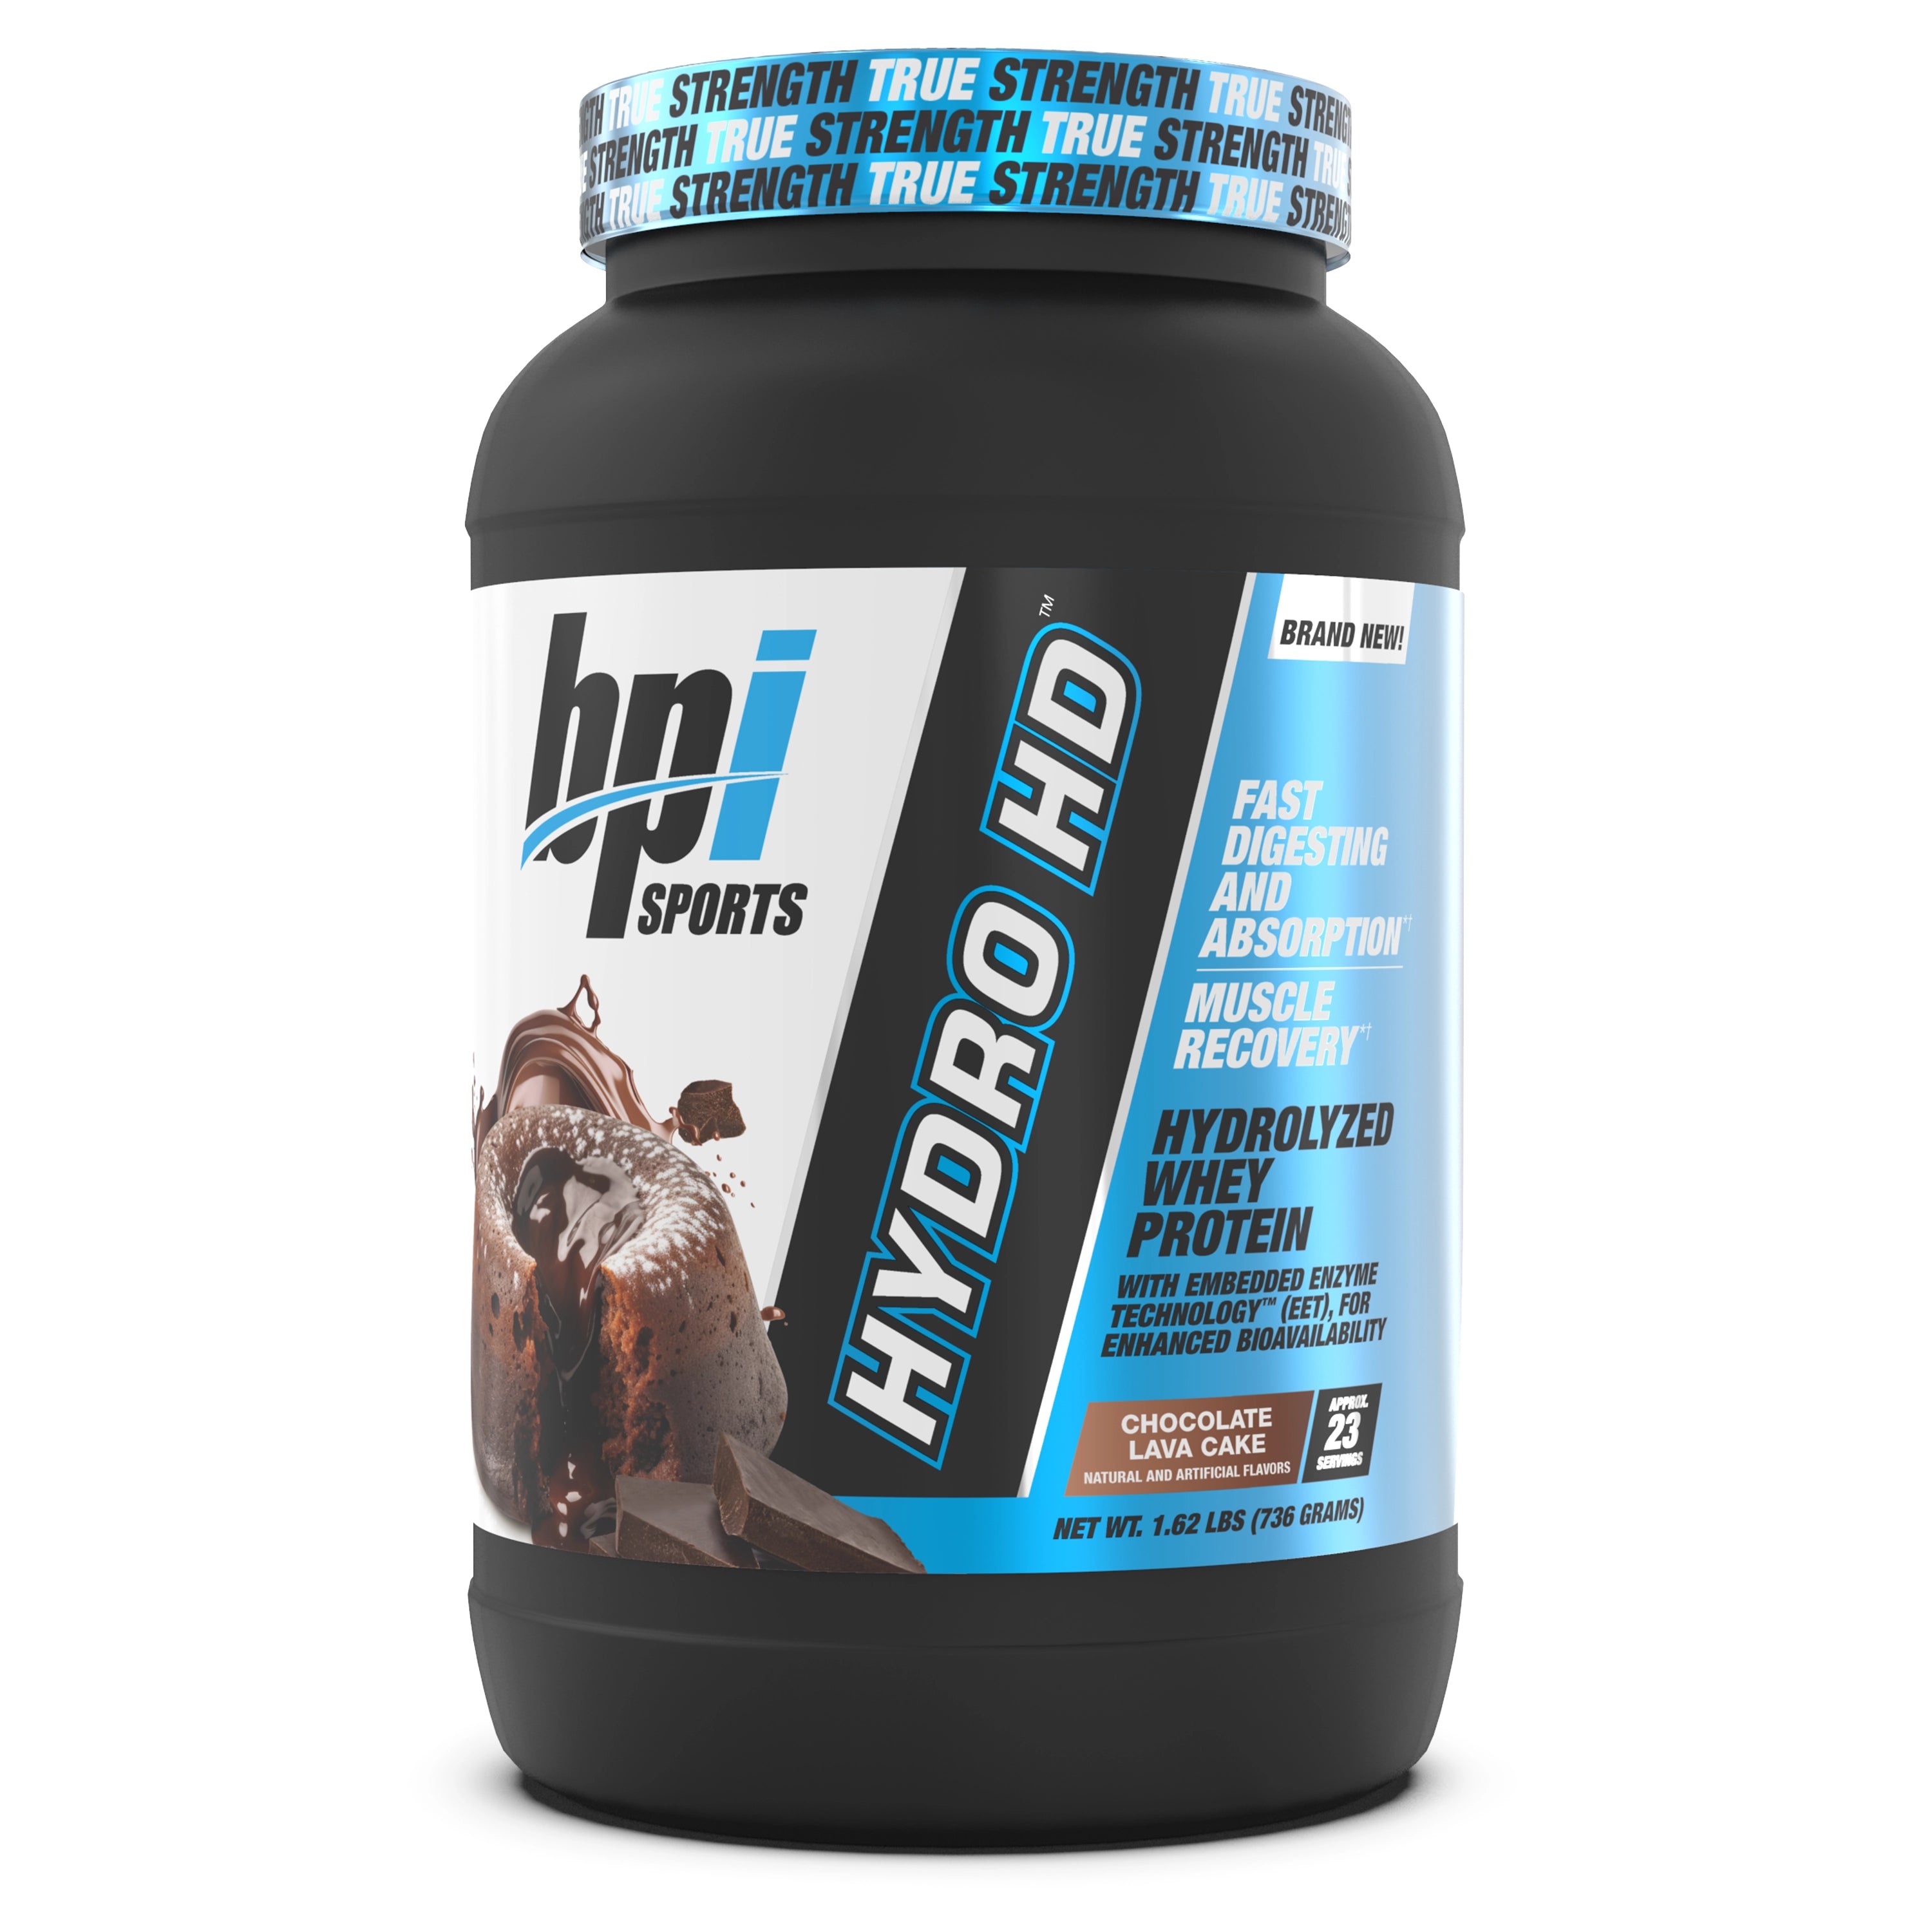 Hydro HD™ - Hydrolyzed Whey Protein (23 Servings)